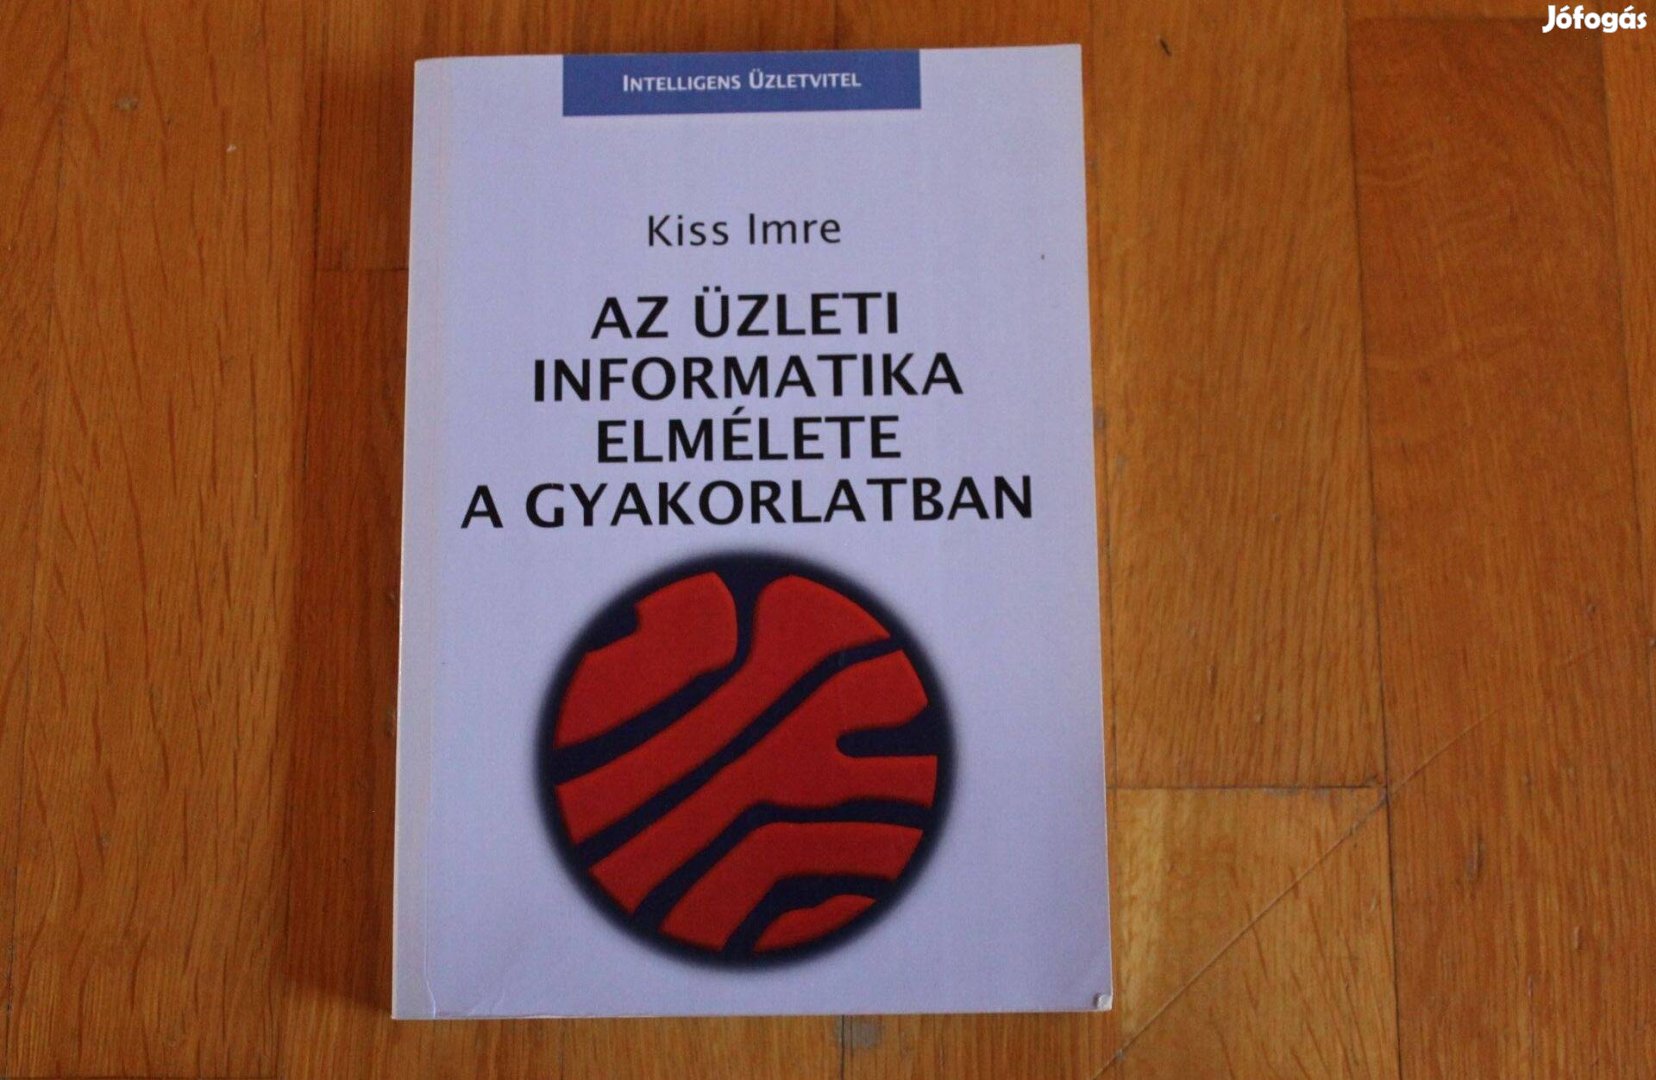 Kiss Imre - Az üzleti informatika elmélete a gyakorlatban